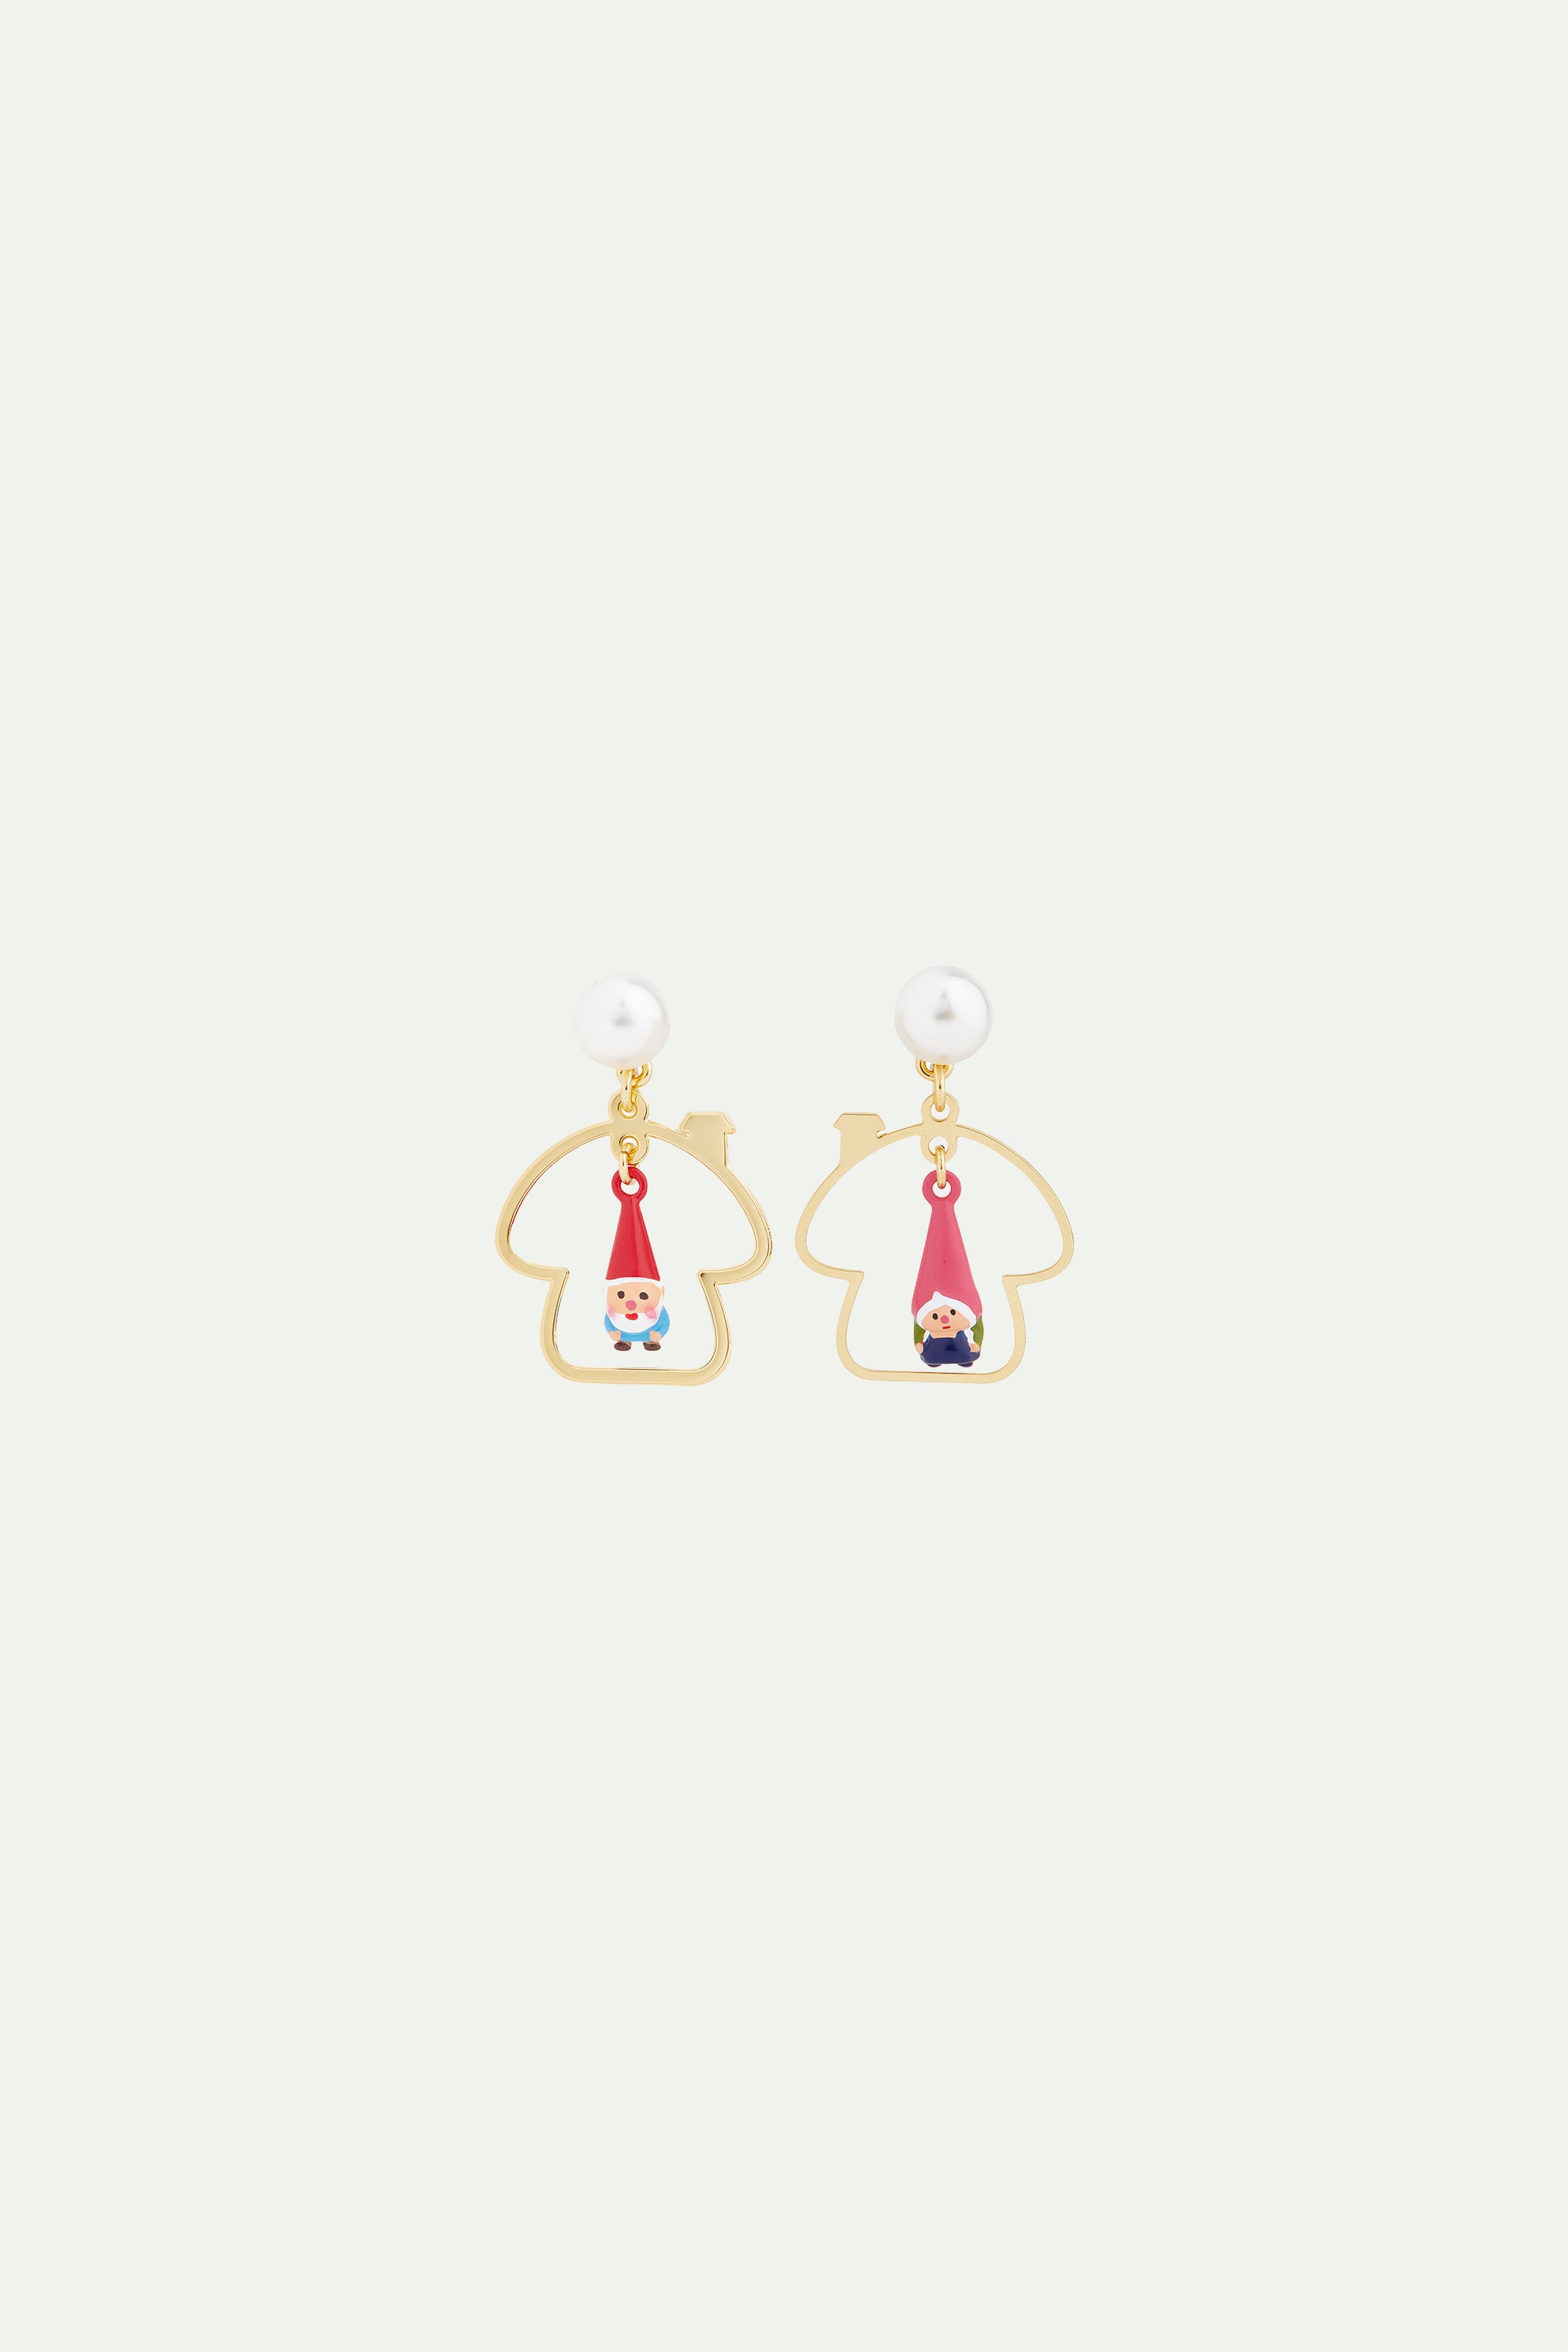 Toadstool family asymmetrical post earrings